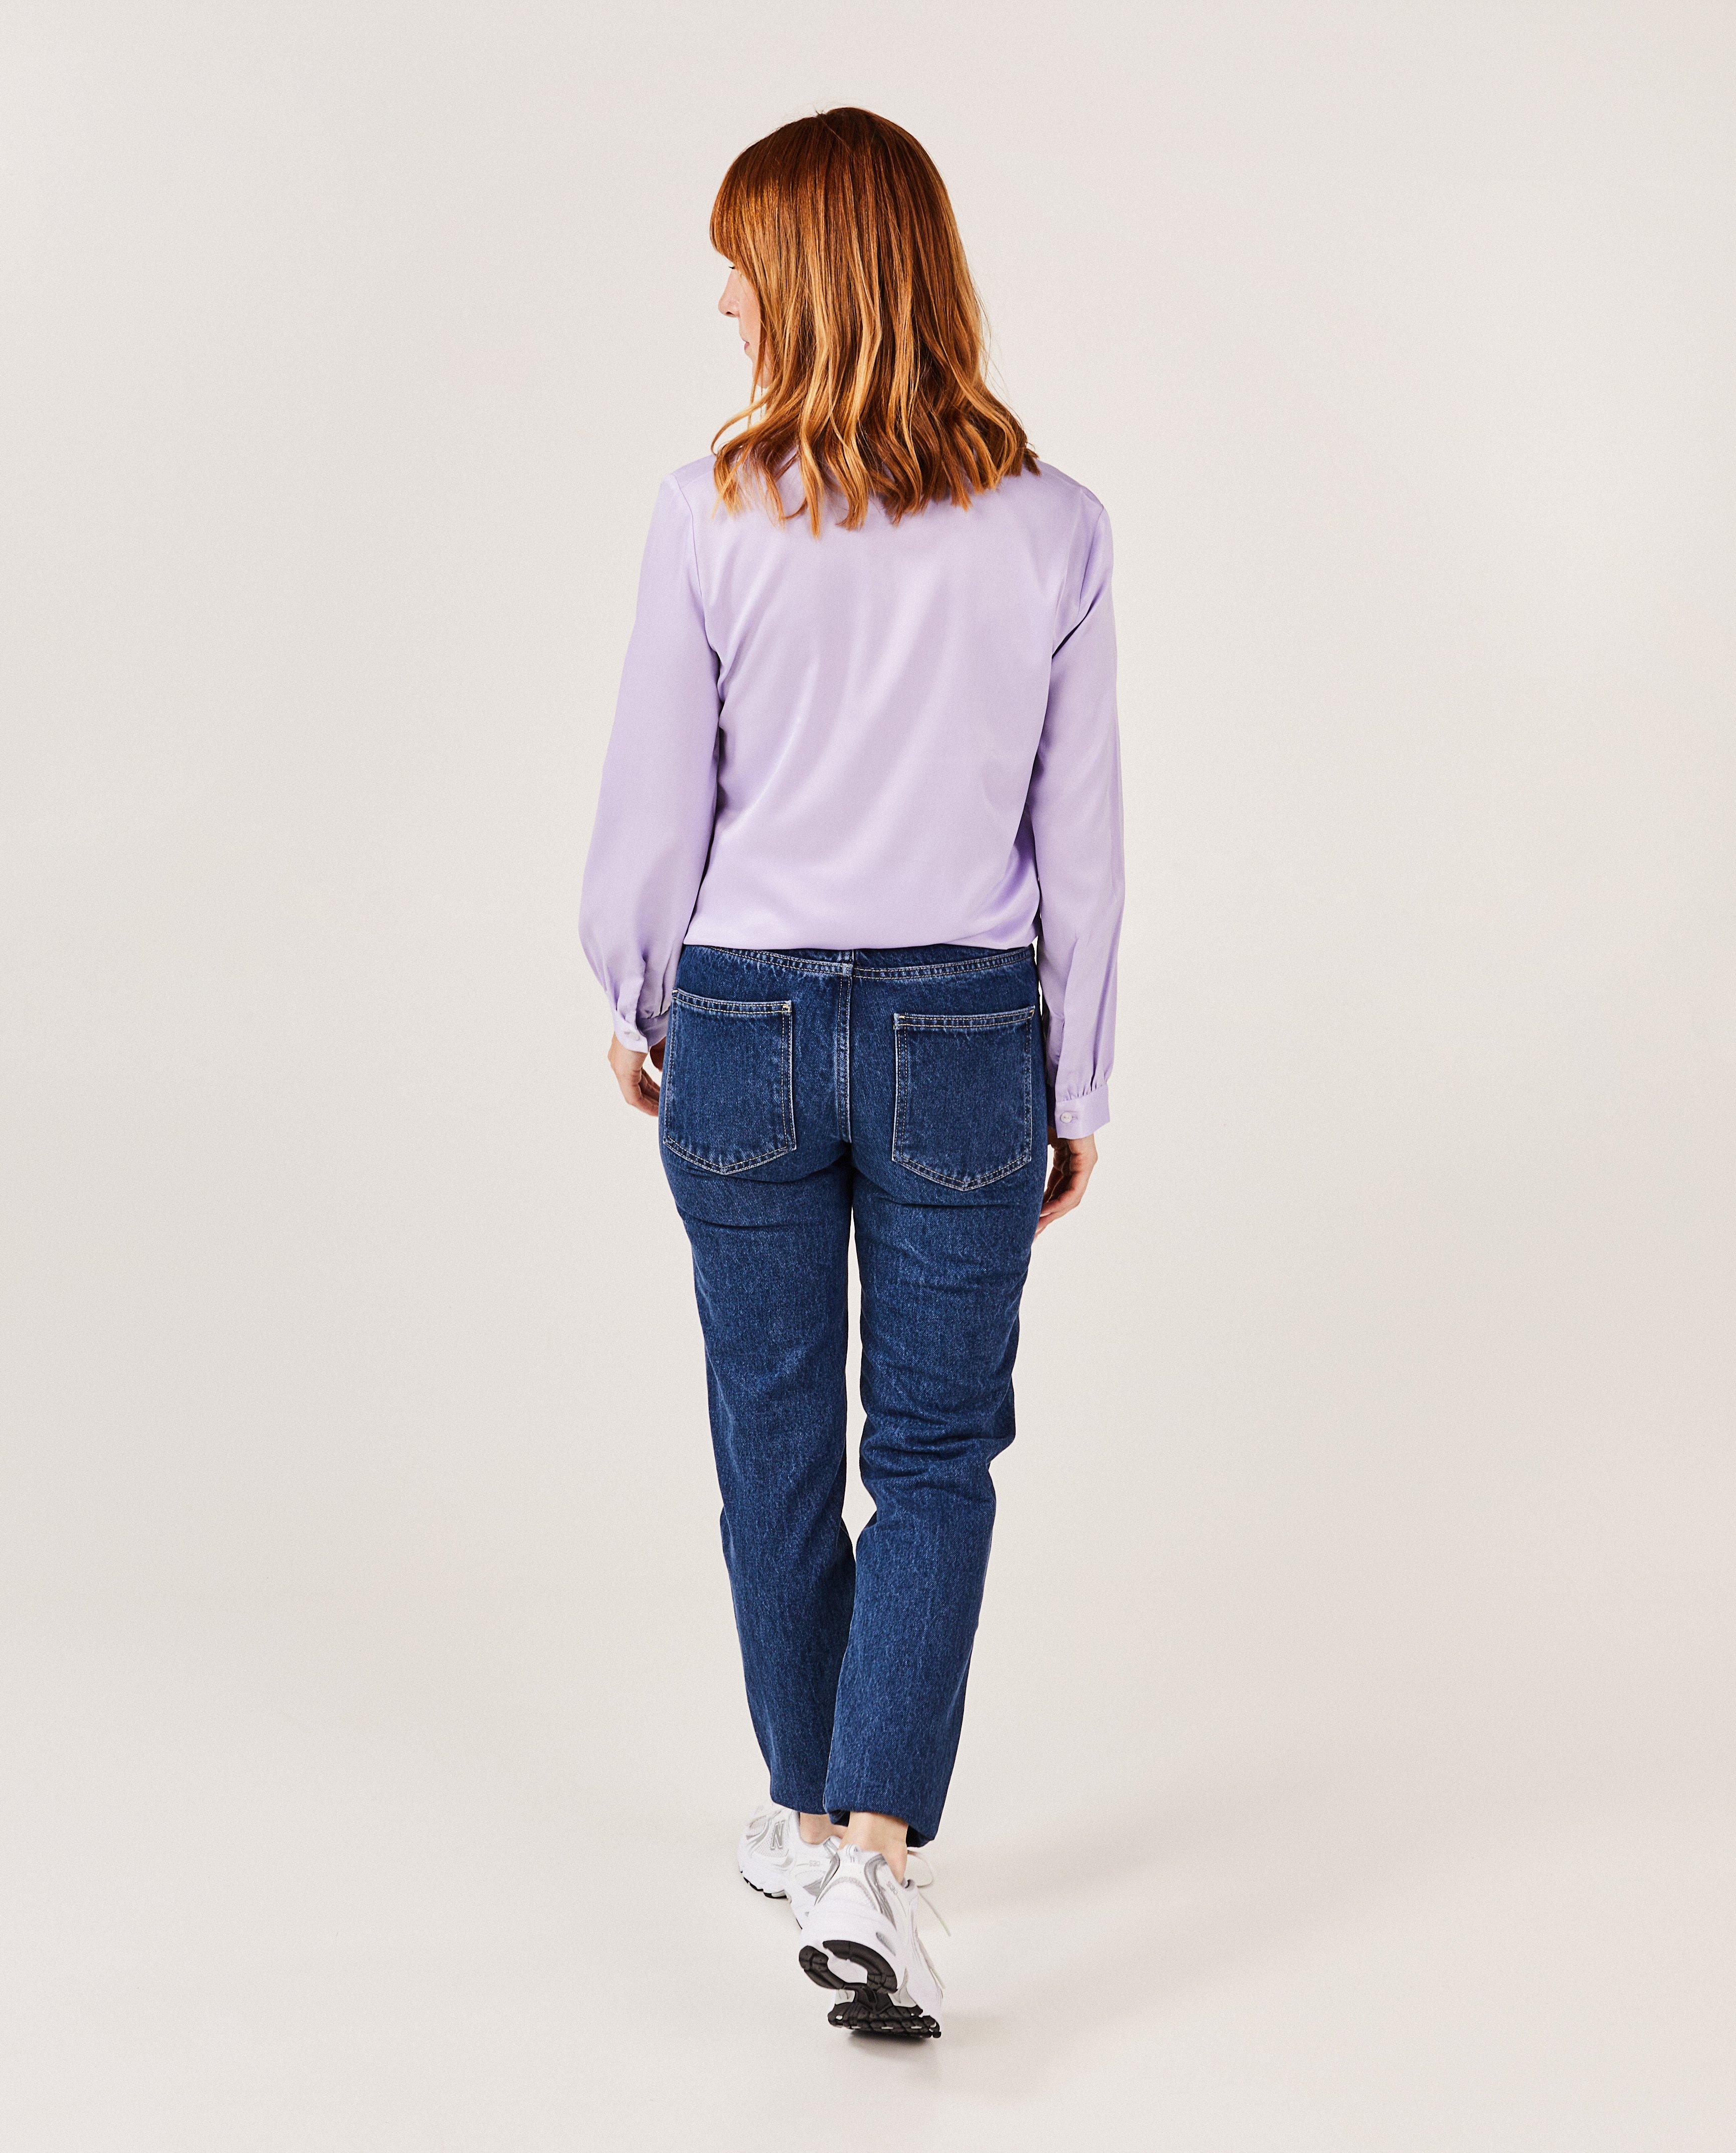 Jeans - Donkerblauwe broek, mom fit